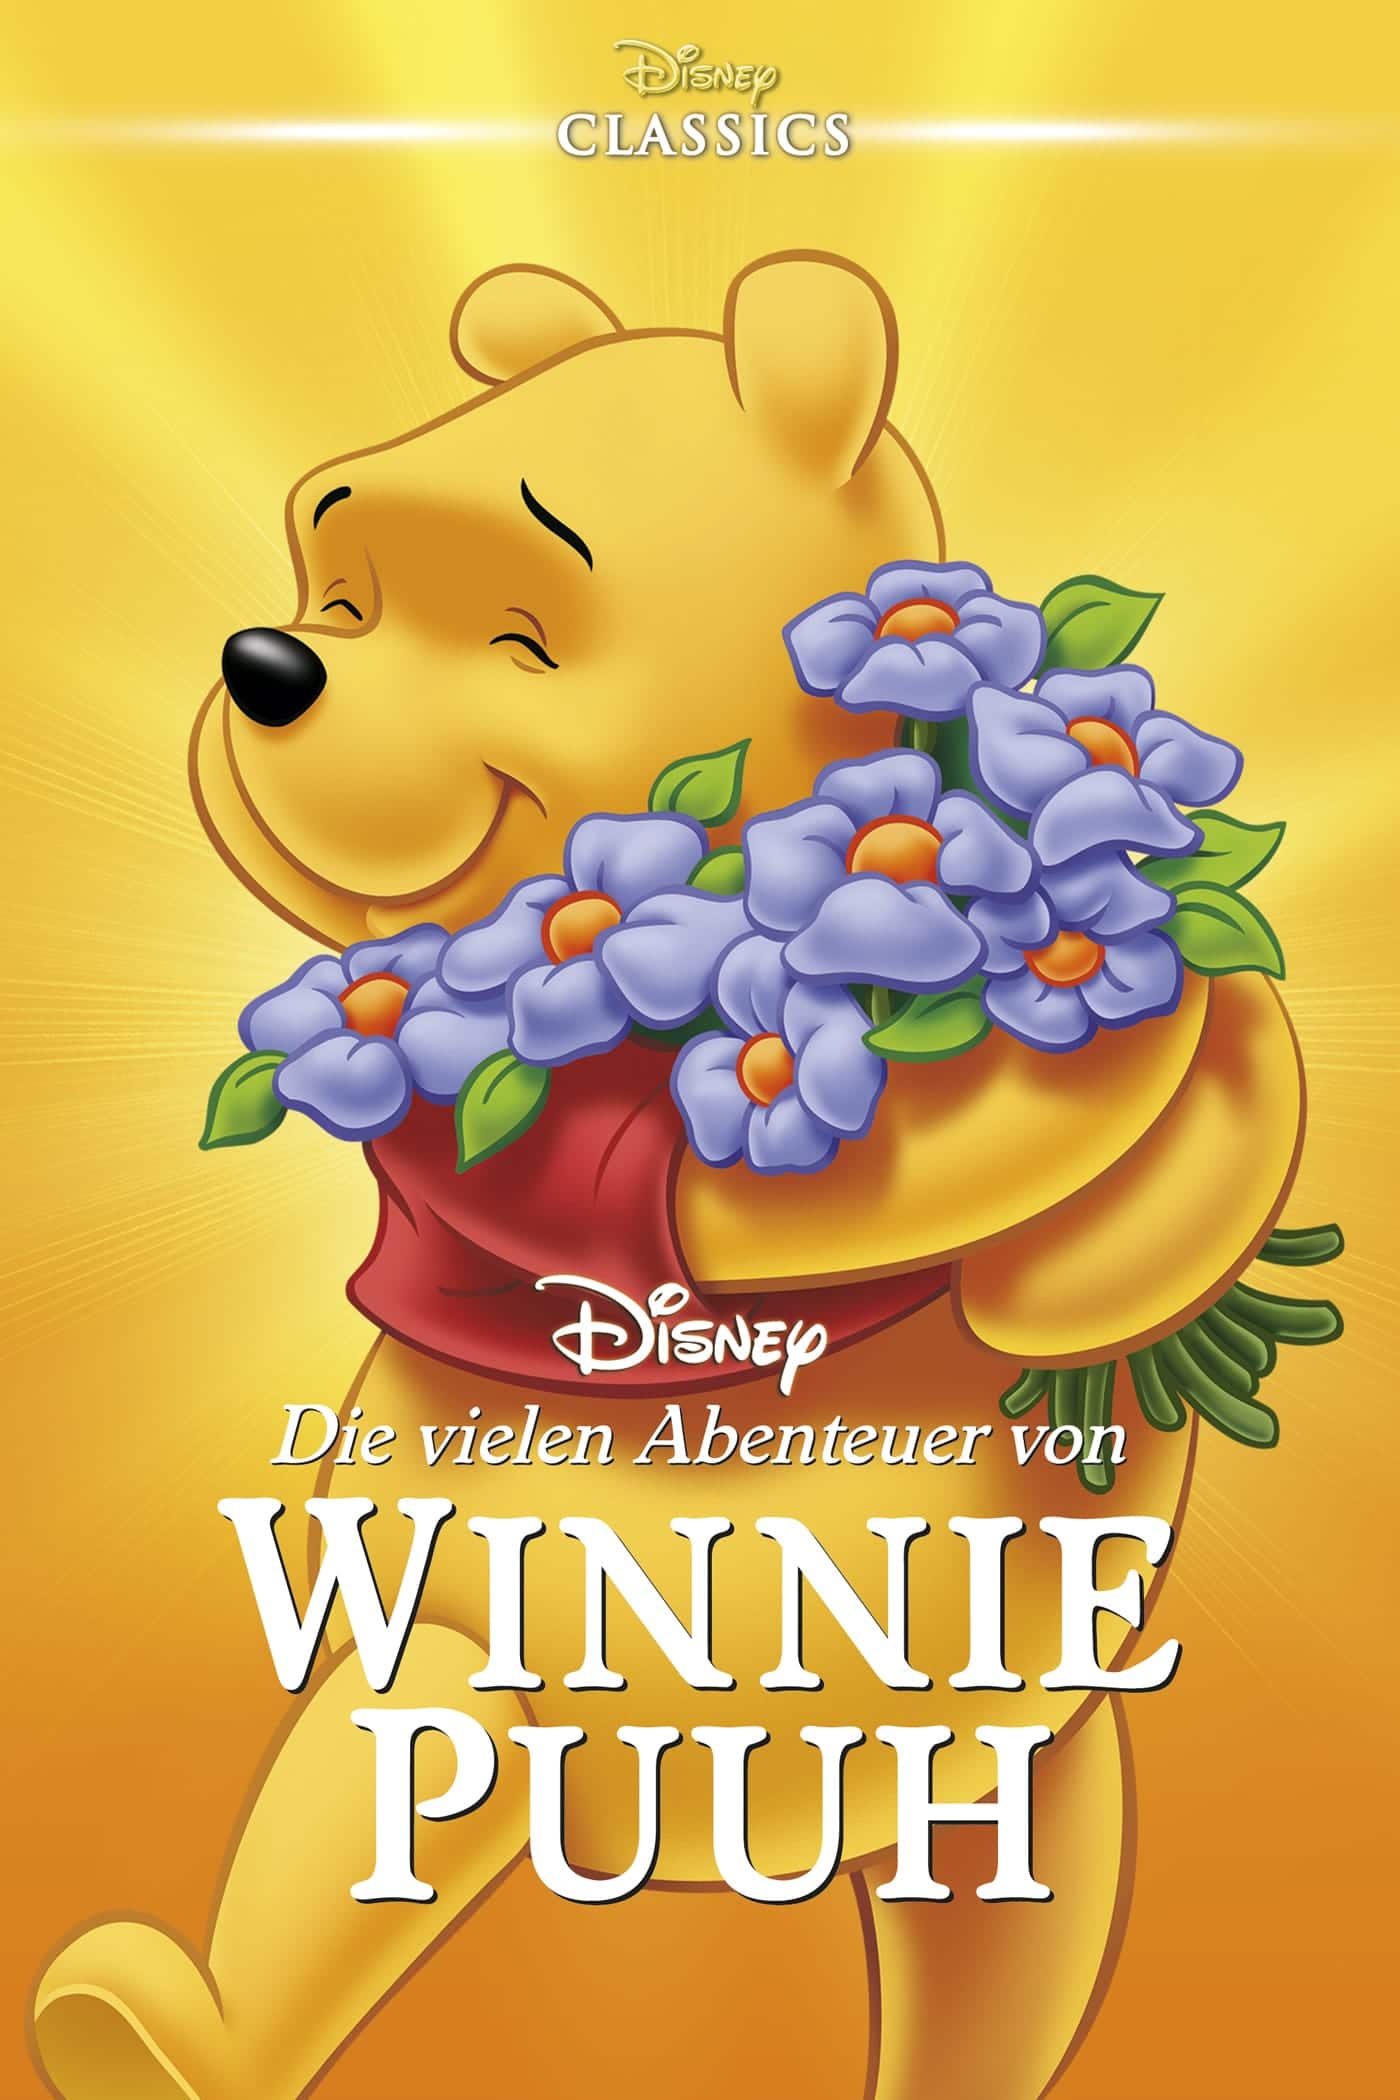 Plakat von "Die vielen Abenteuer von Winnie Puuh"